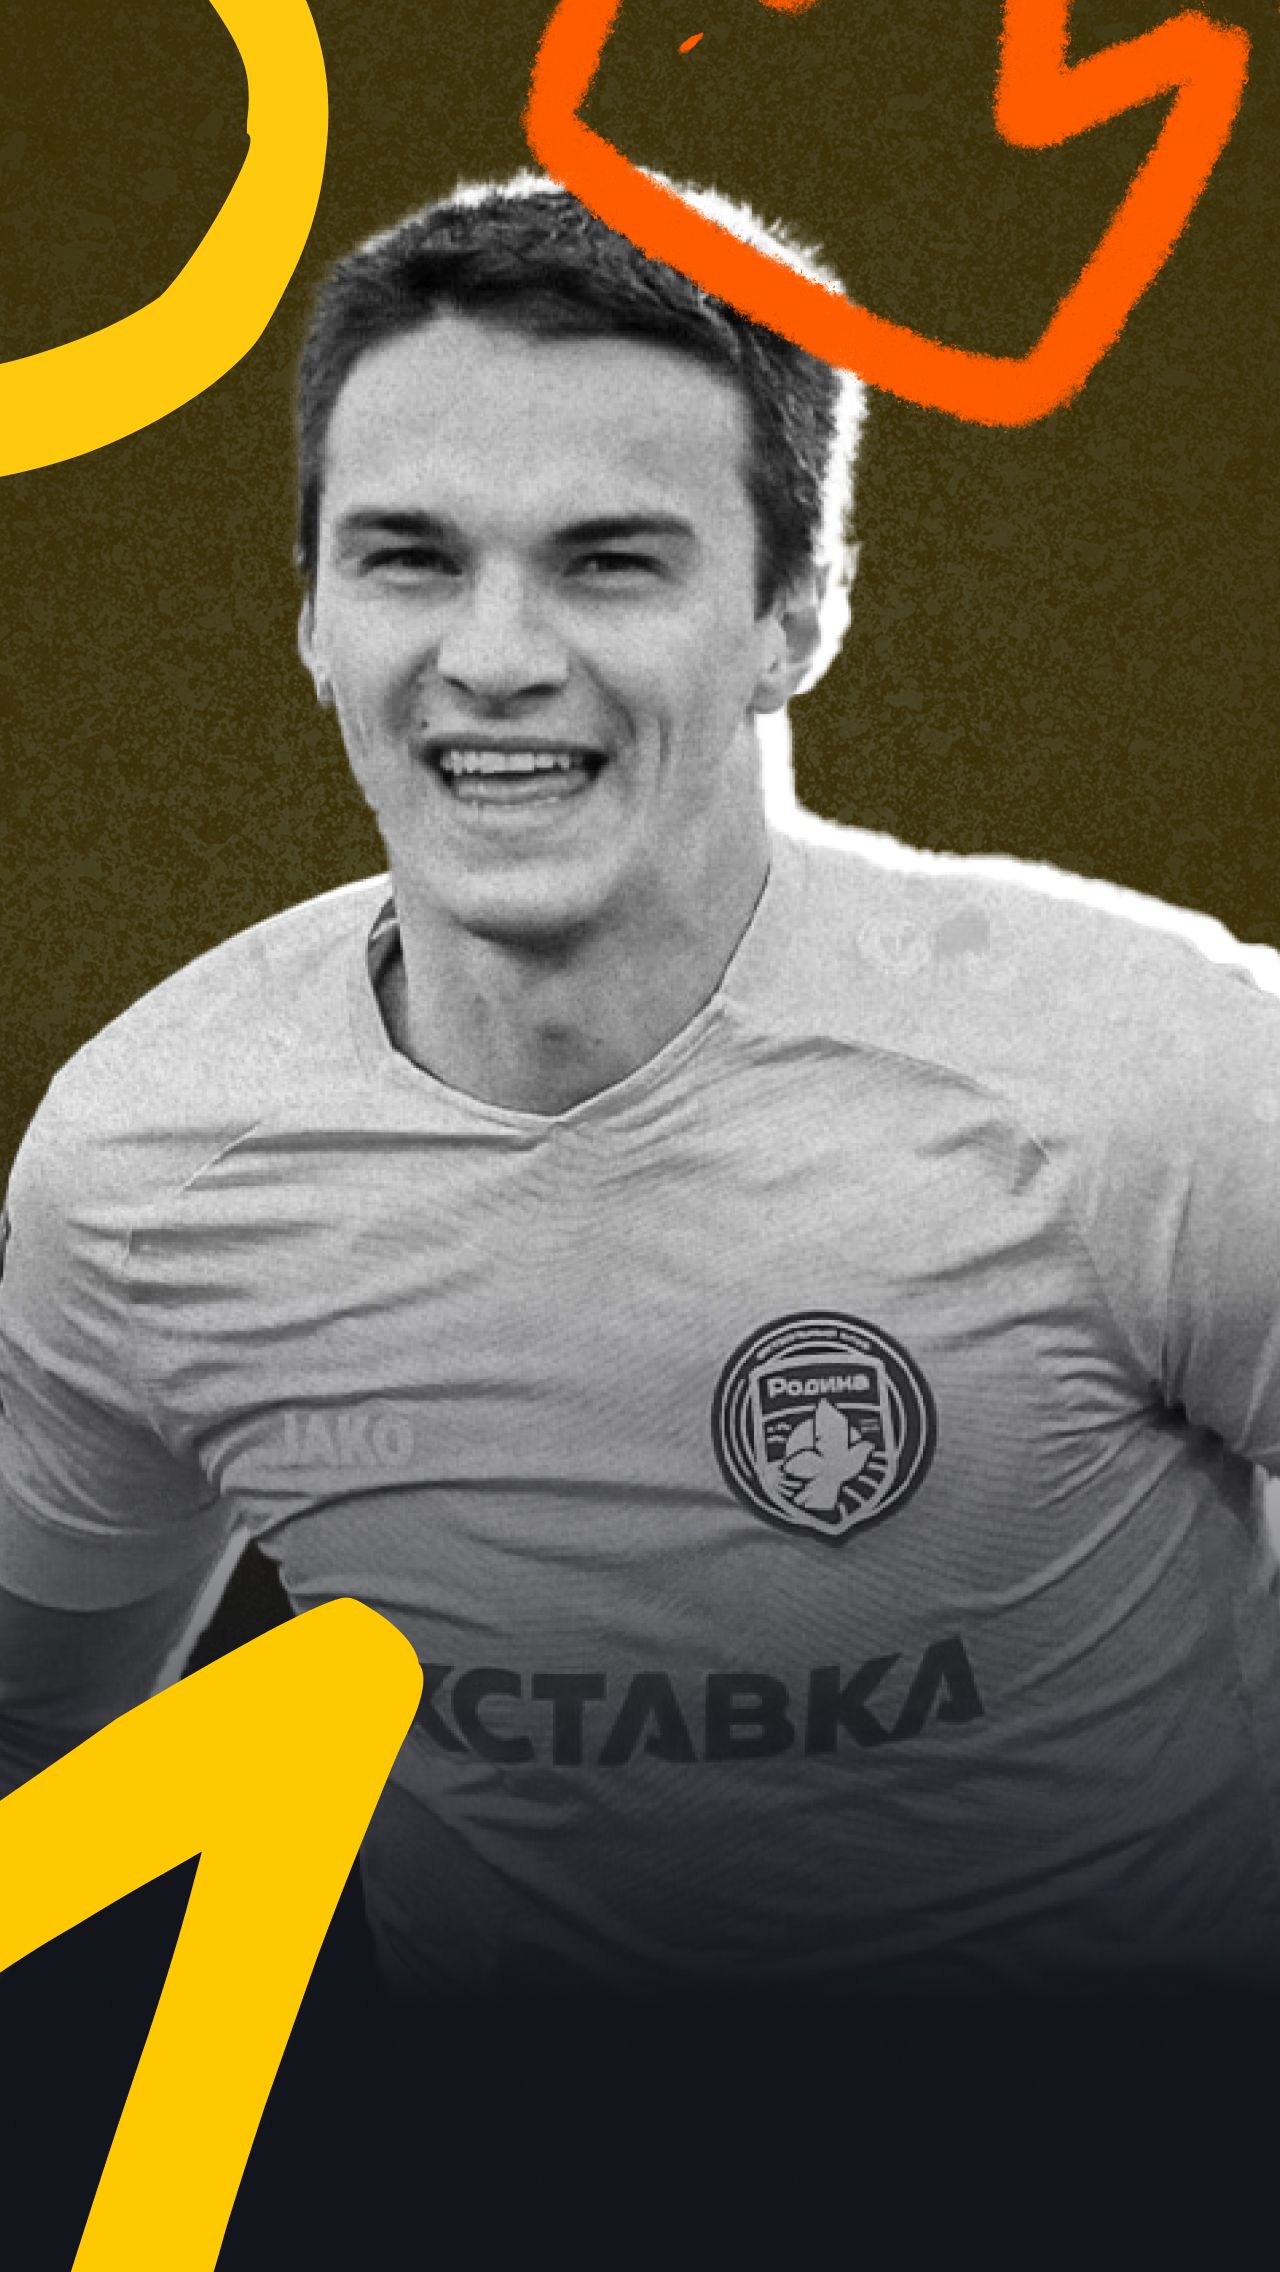 В начале 2022-го карьера Тимошенко пошла вверх. Он перешёл в новороссийский «Черноморец», выступавший во Второй лиге. И успешно: 16 голов в 13 матчах во второй половине прошлого сезона!